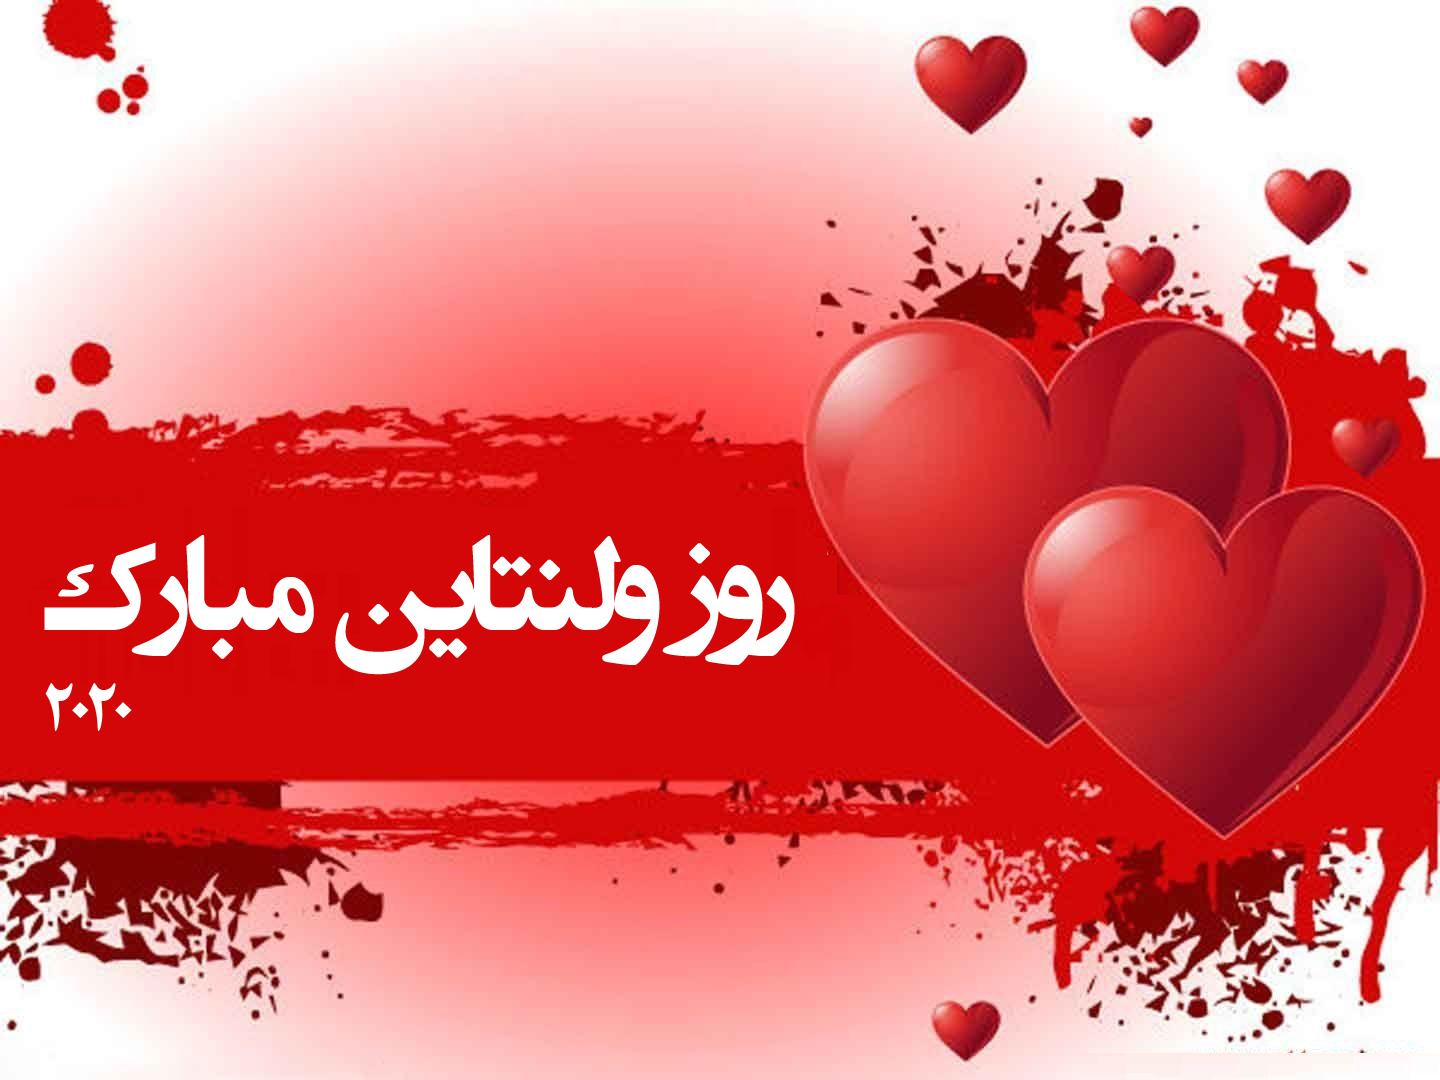 عکس زیبای دو قلب قرمز با متن روز ولنتاین مبارک